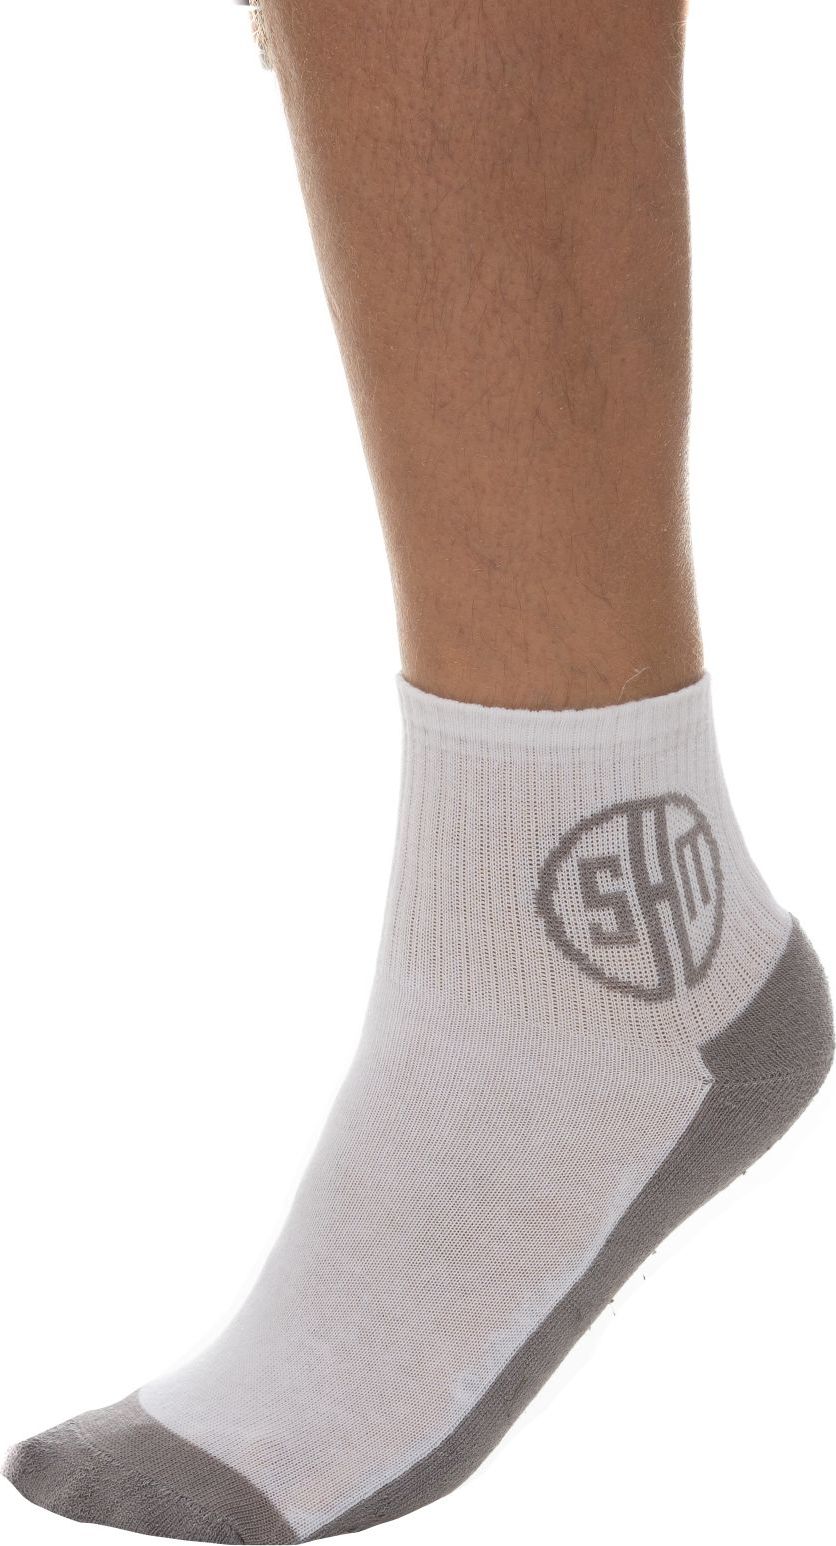 Ponožky SAM 73 Topeka bílé Velikost: 35-38